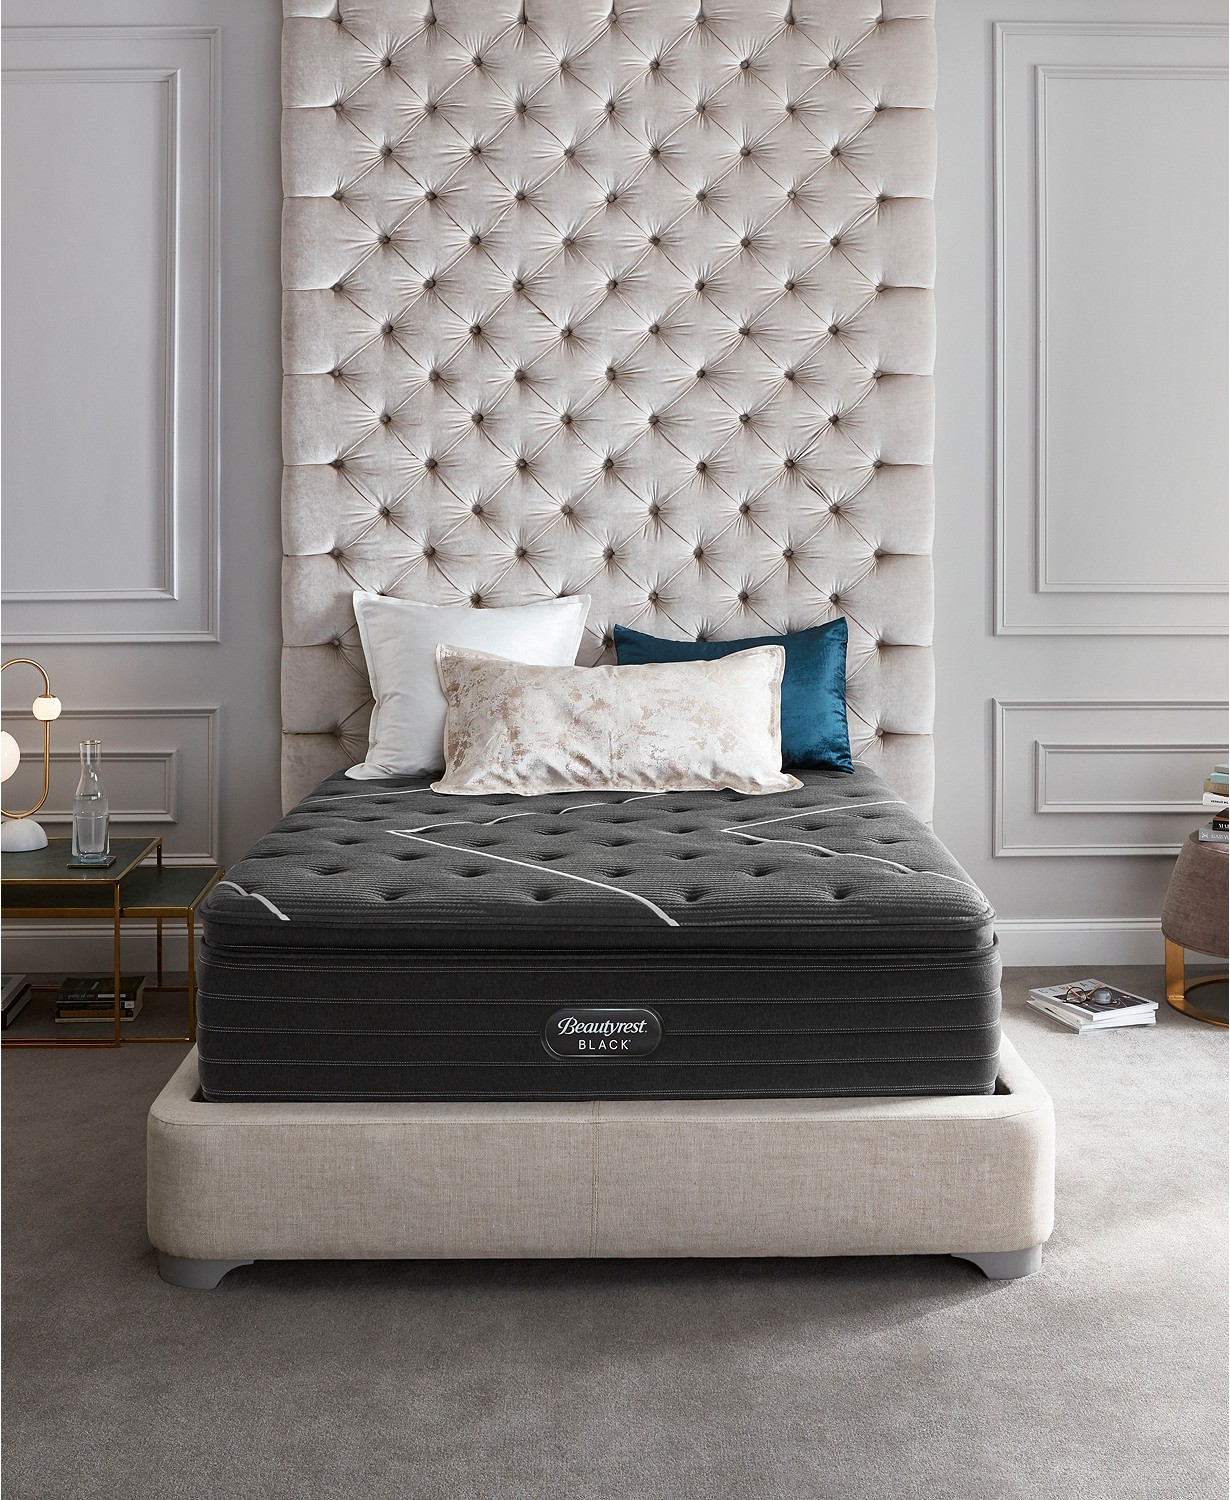 Beautyrest Black C-Class Medium Firm Pillowtop Mattress | Furniture ...